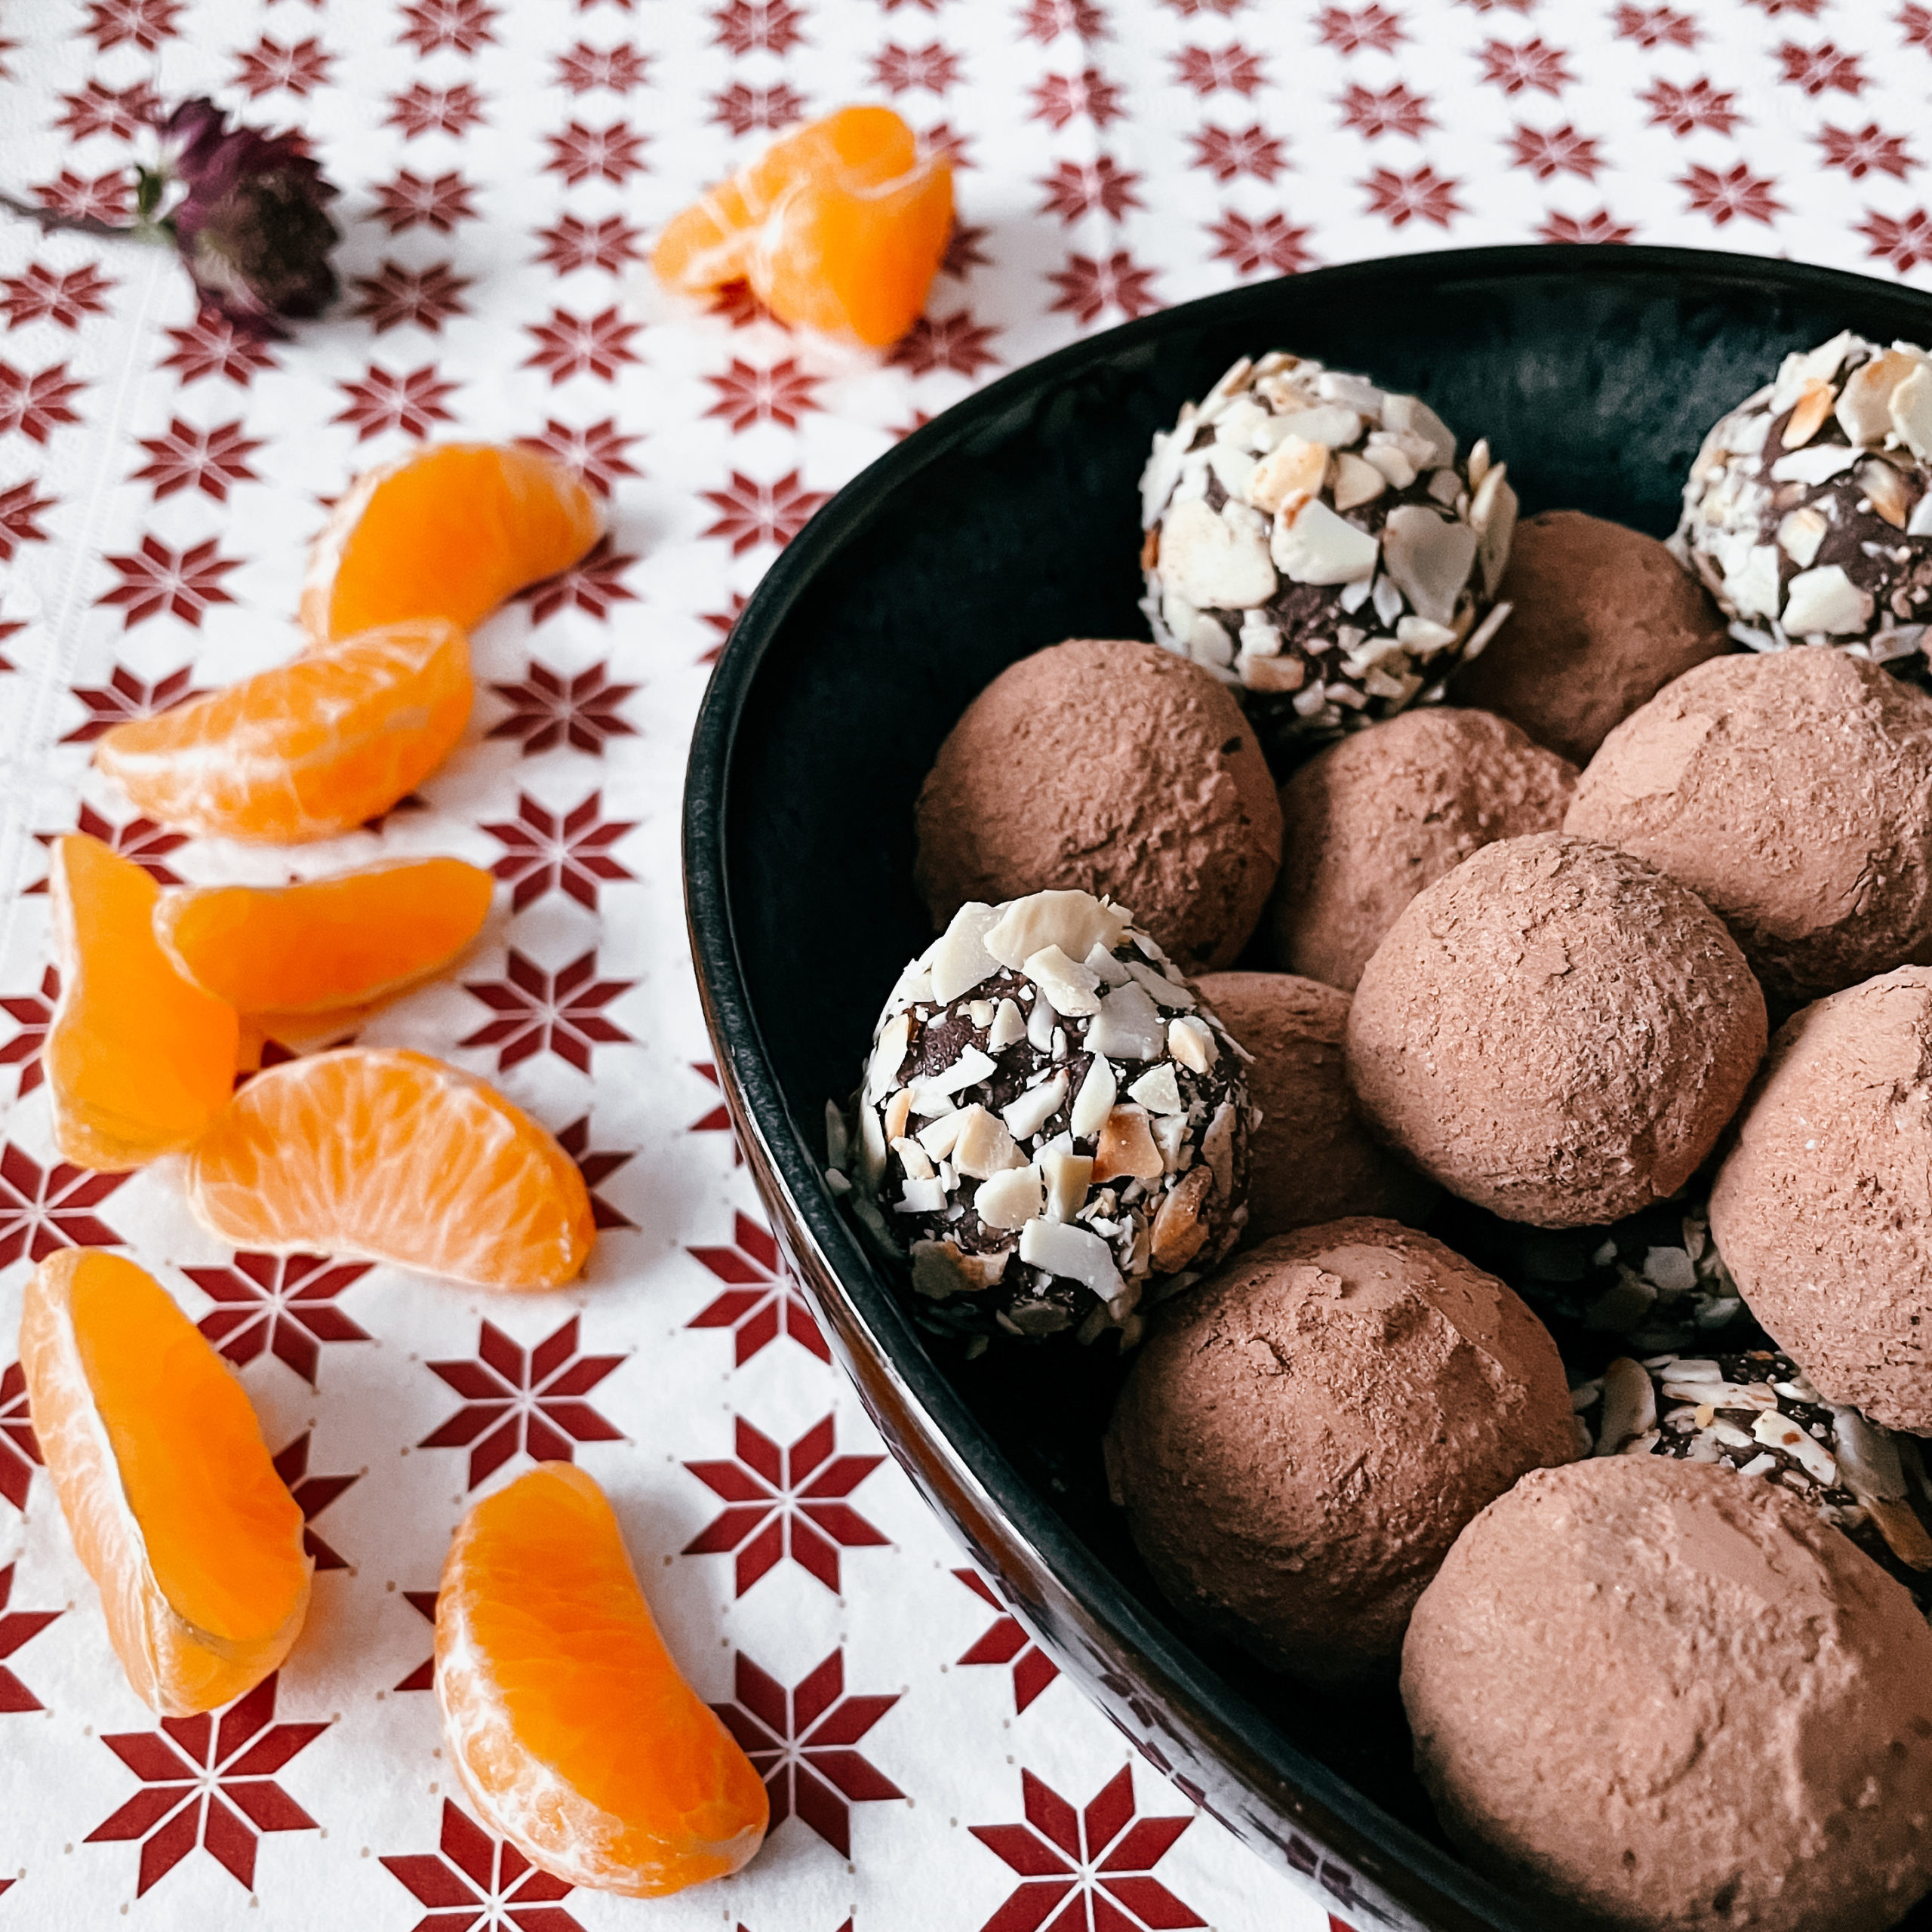 IMG 1906 scaled - Des chocolats qui ne comptent pas pour des truffes.